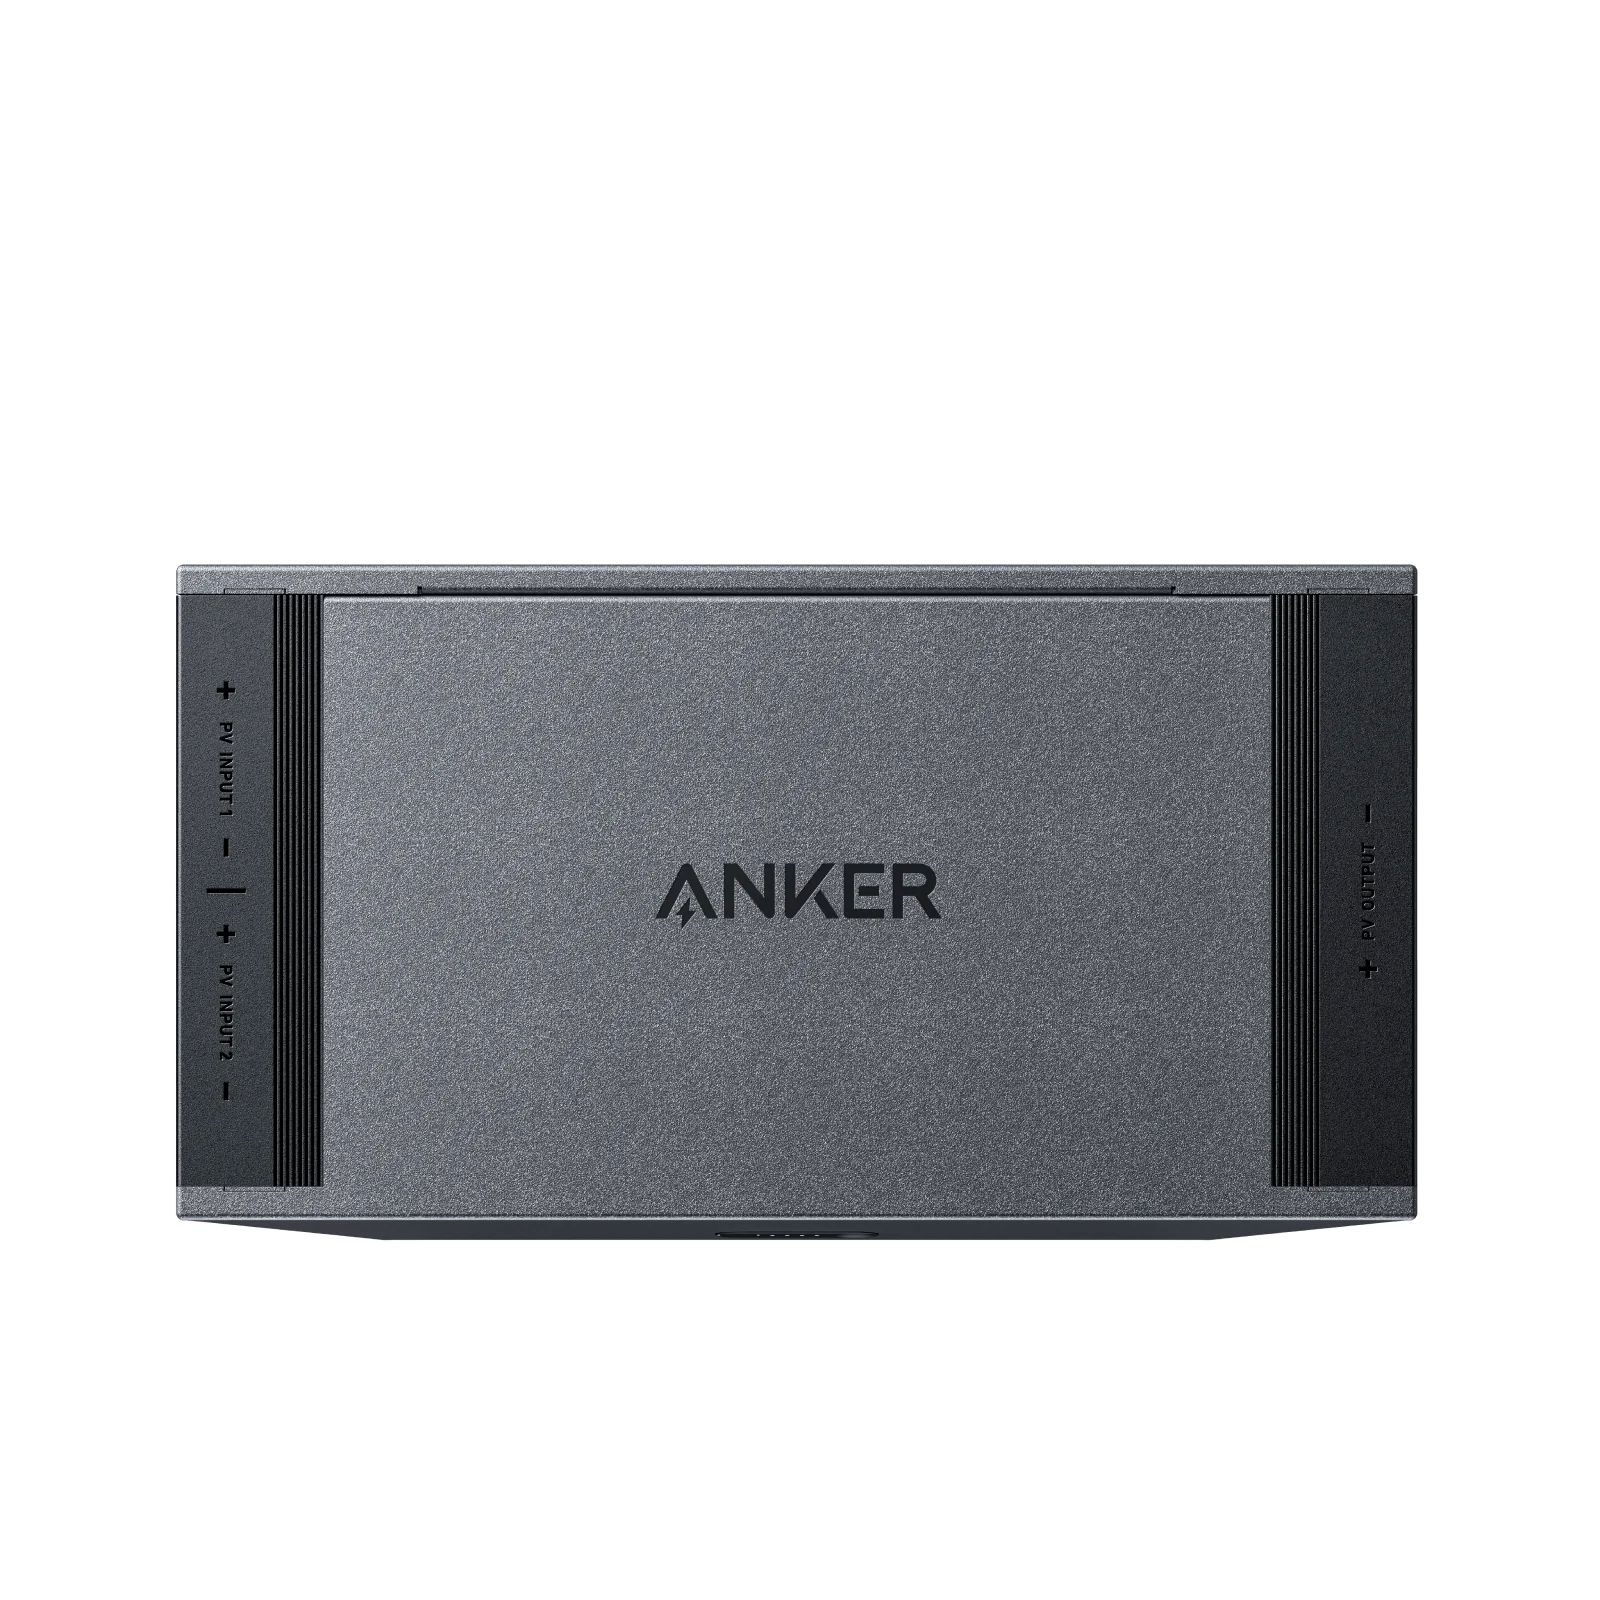 ANKER A1289011, Powerbank